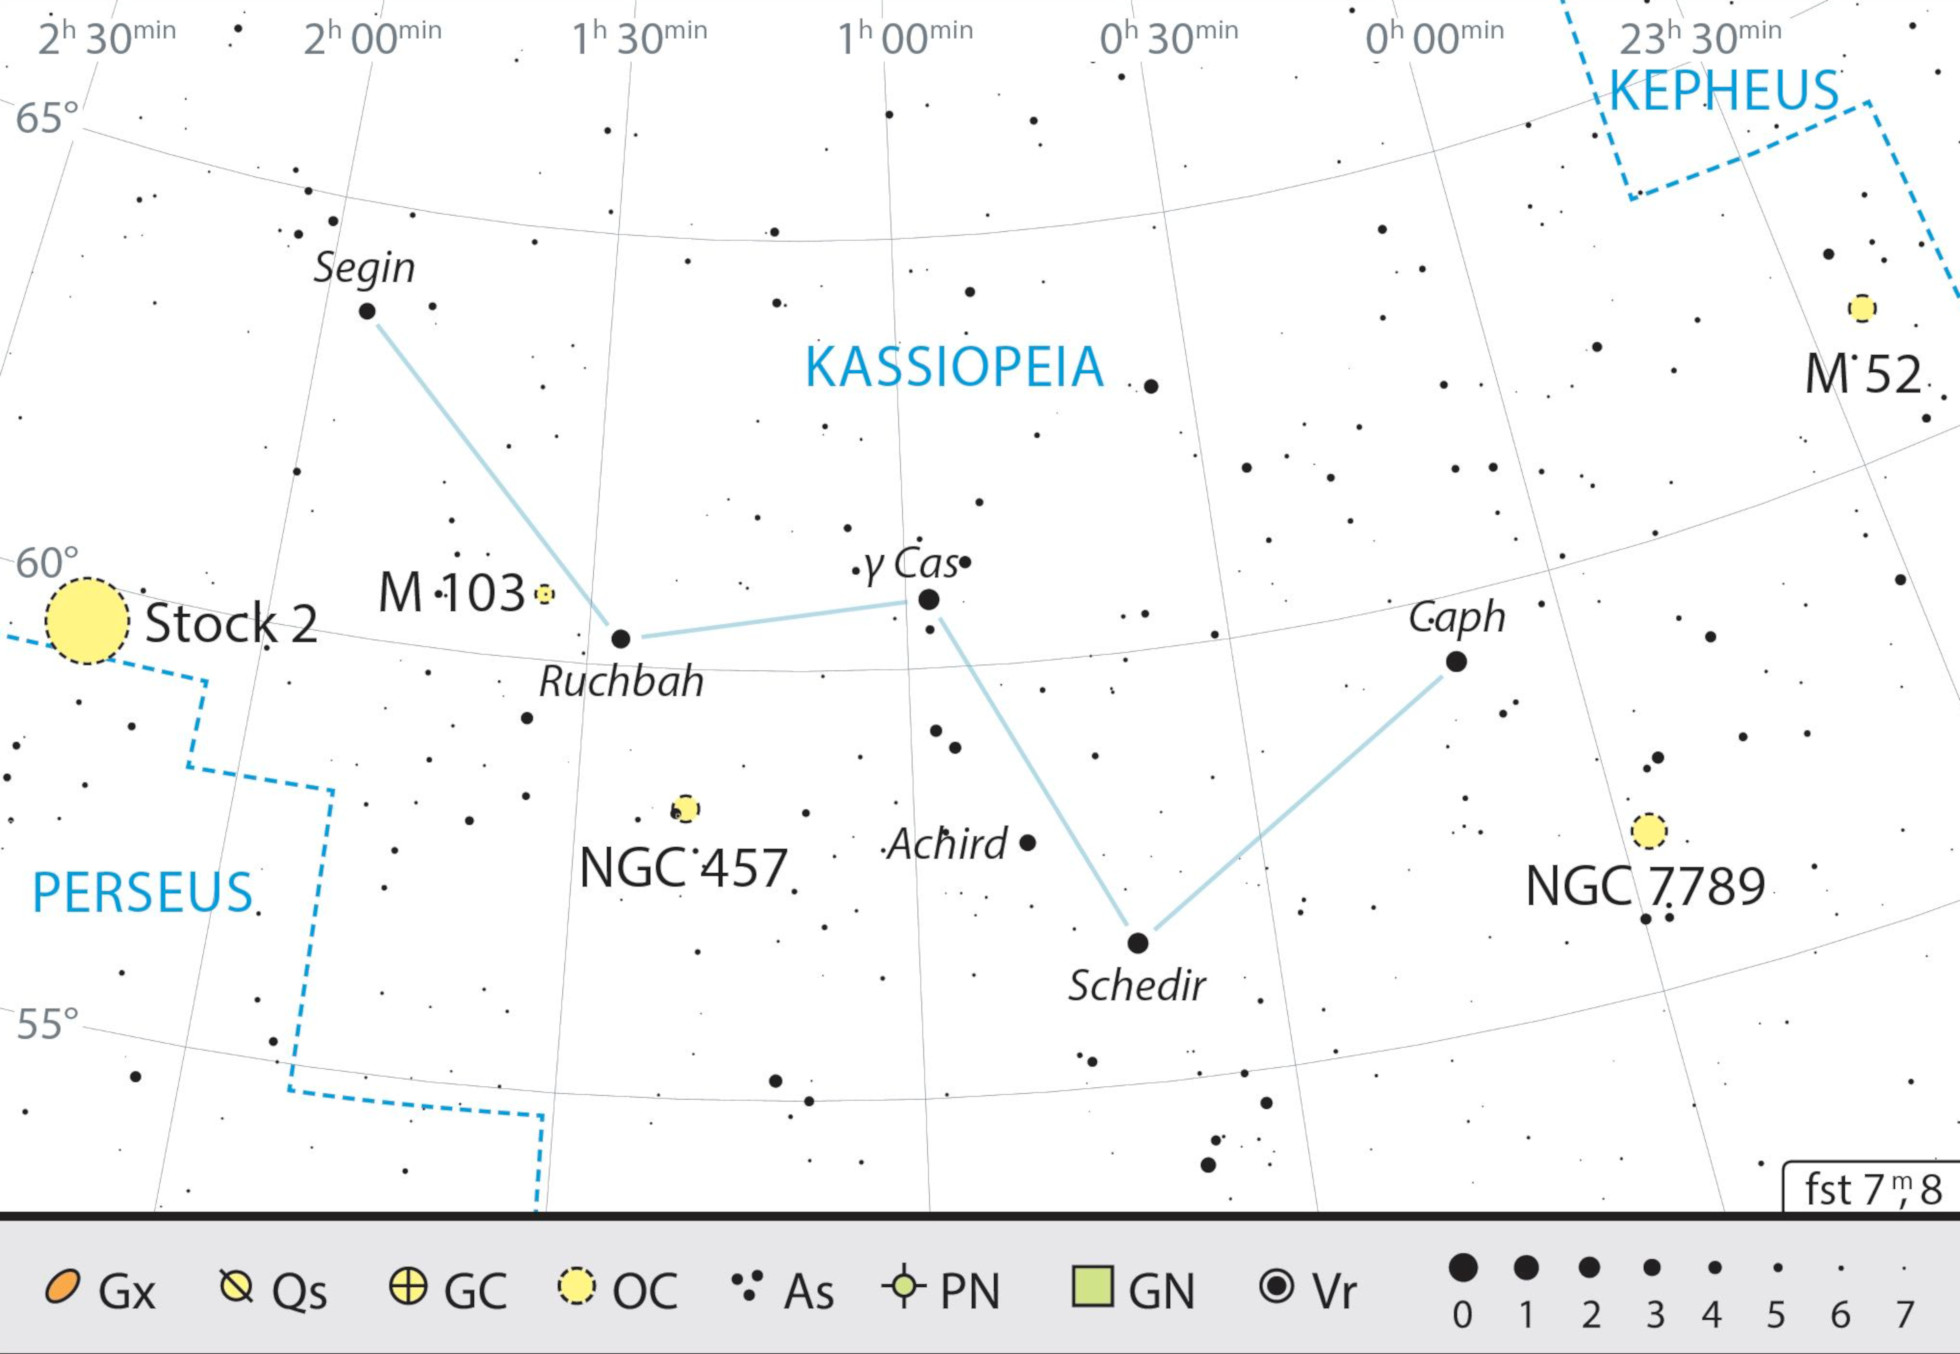 Mappa celeste per la costellazione di Cassiopeia con gli oggetti consigliati. J. Scholten